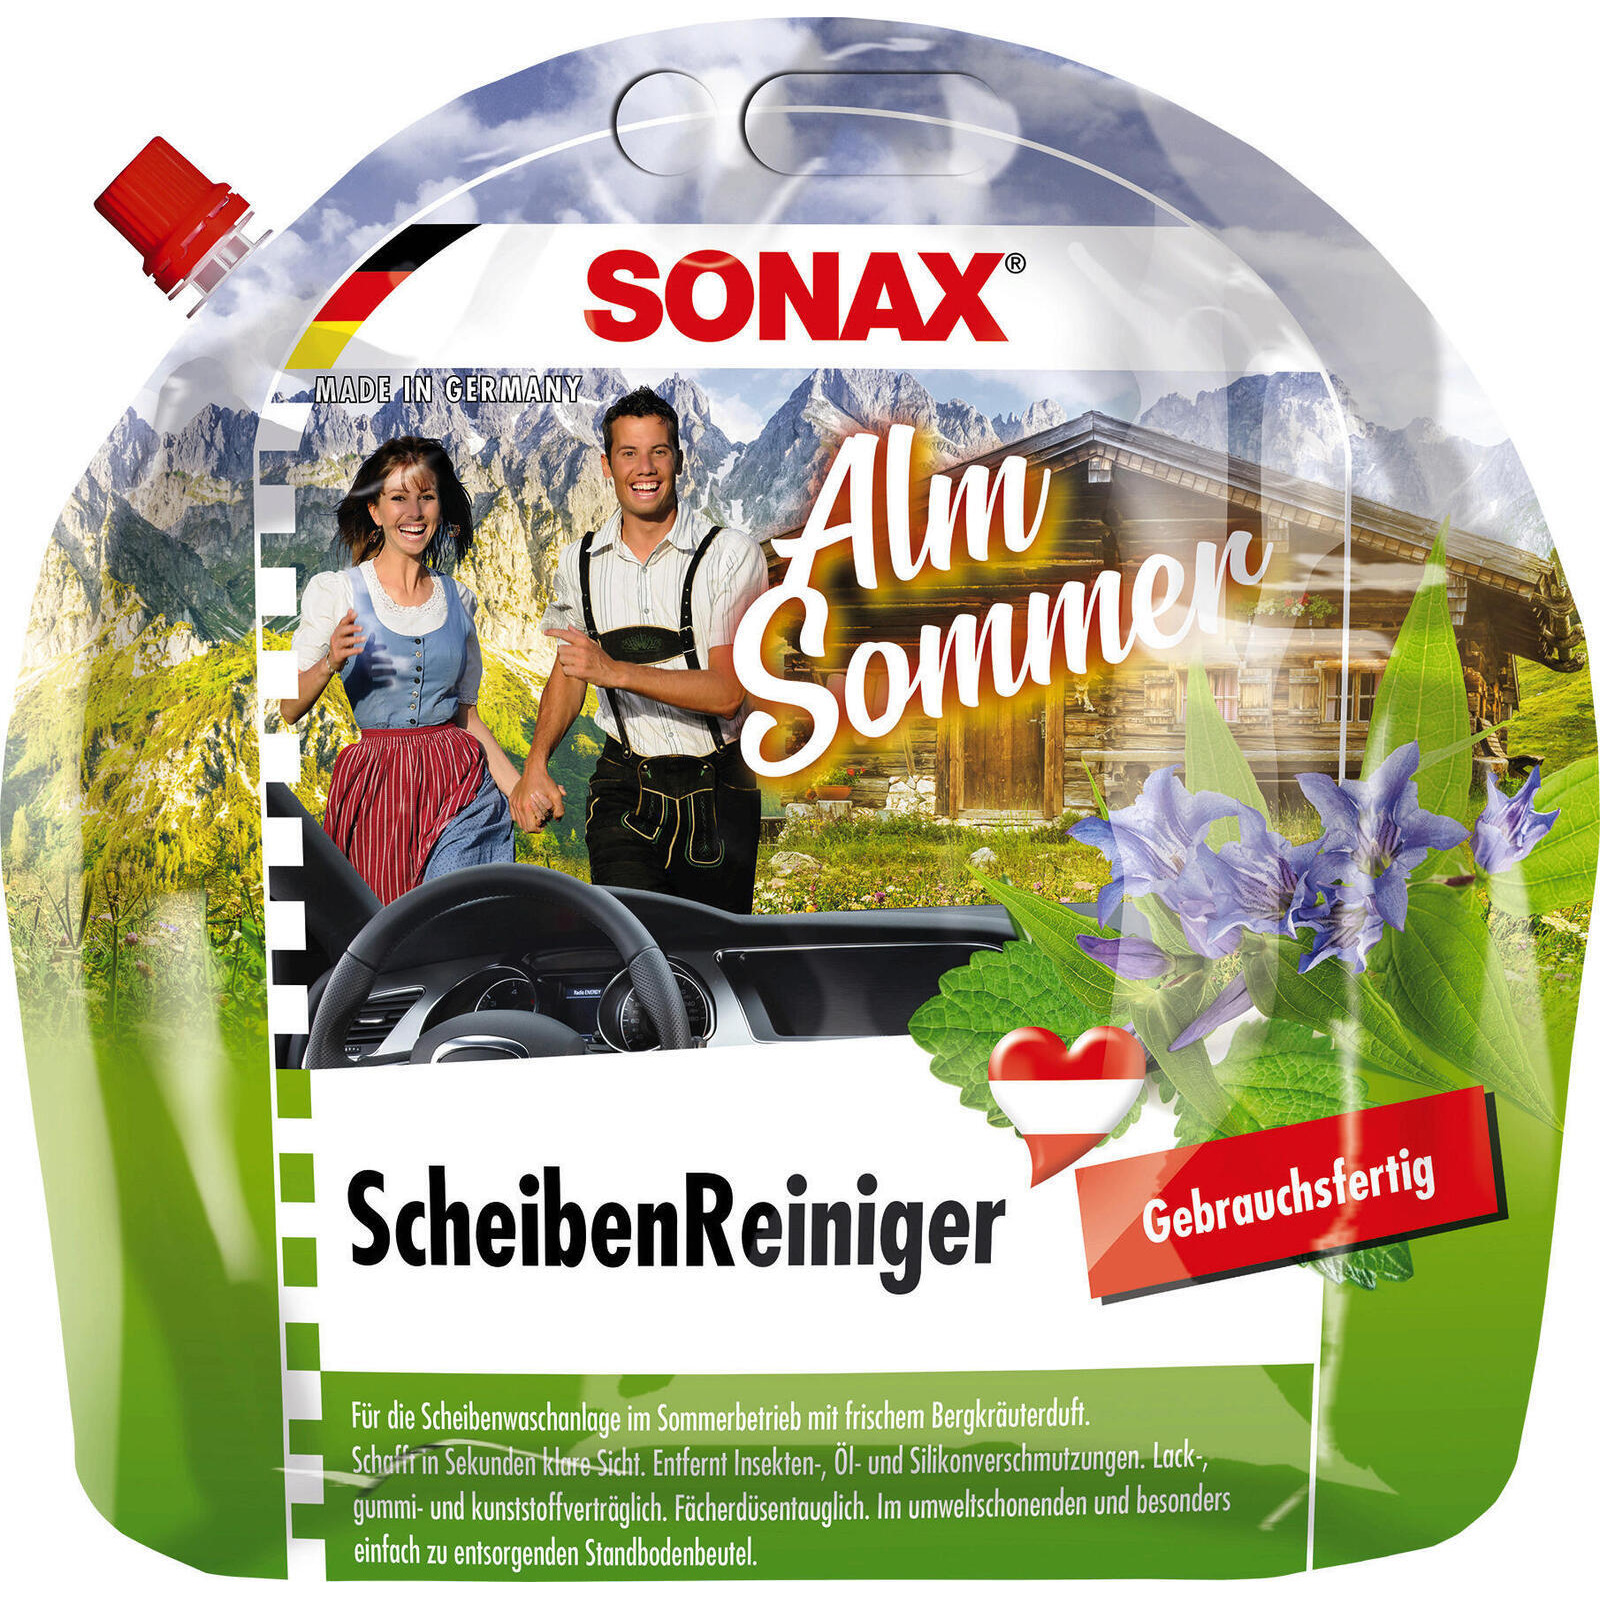 SONAX Cleaner, window cleaning system ScheibenReiniger gebrauchsfertig AlmSommer